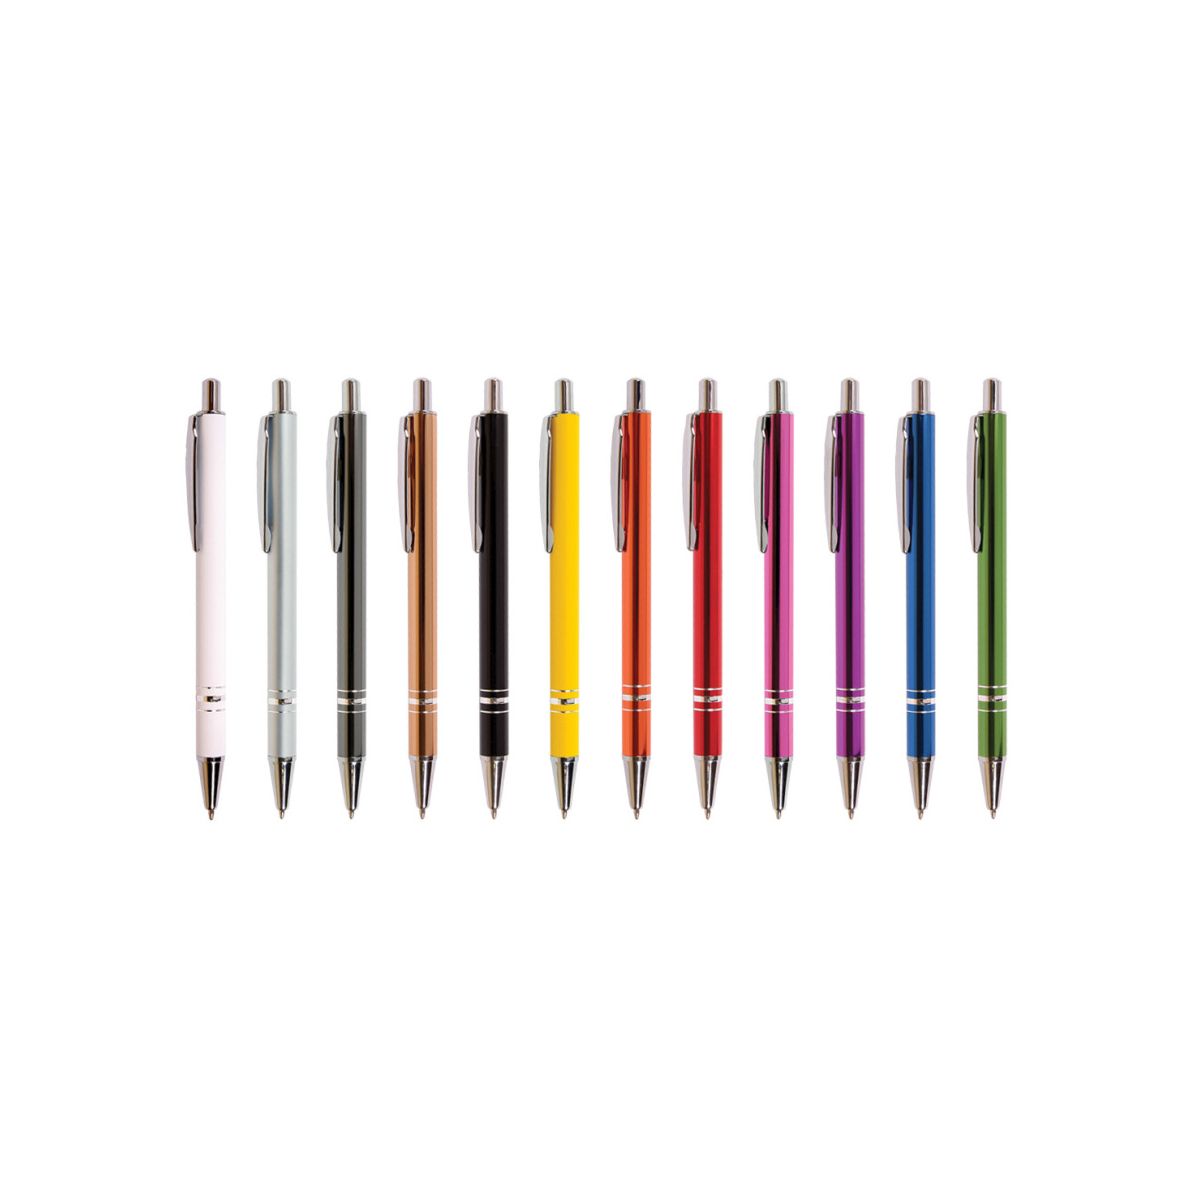 Ołówek automatyczny Cresco Carlos 0,5mm (451005)